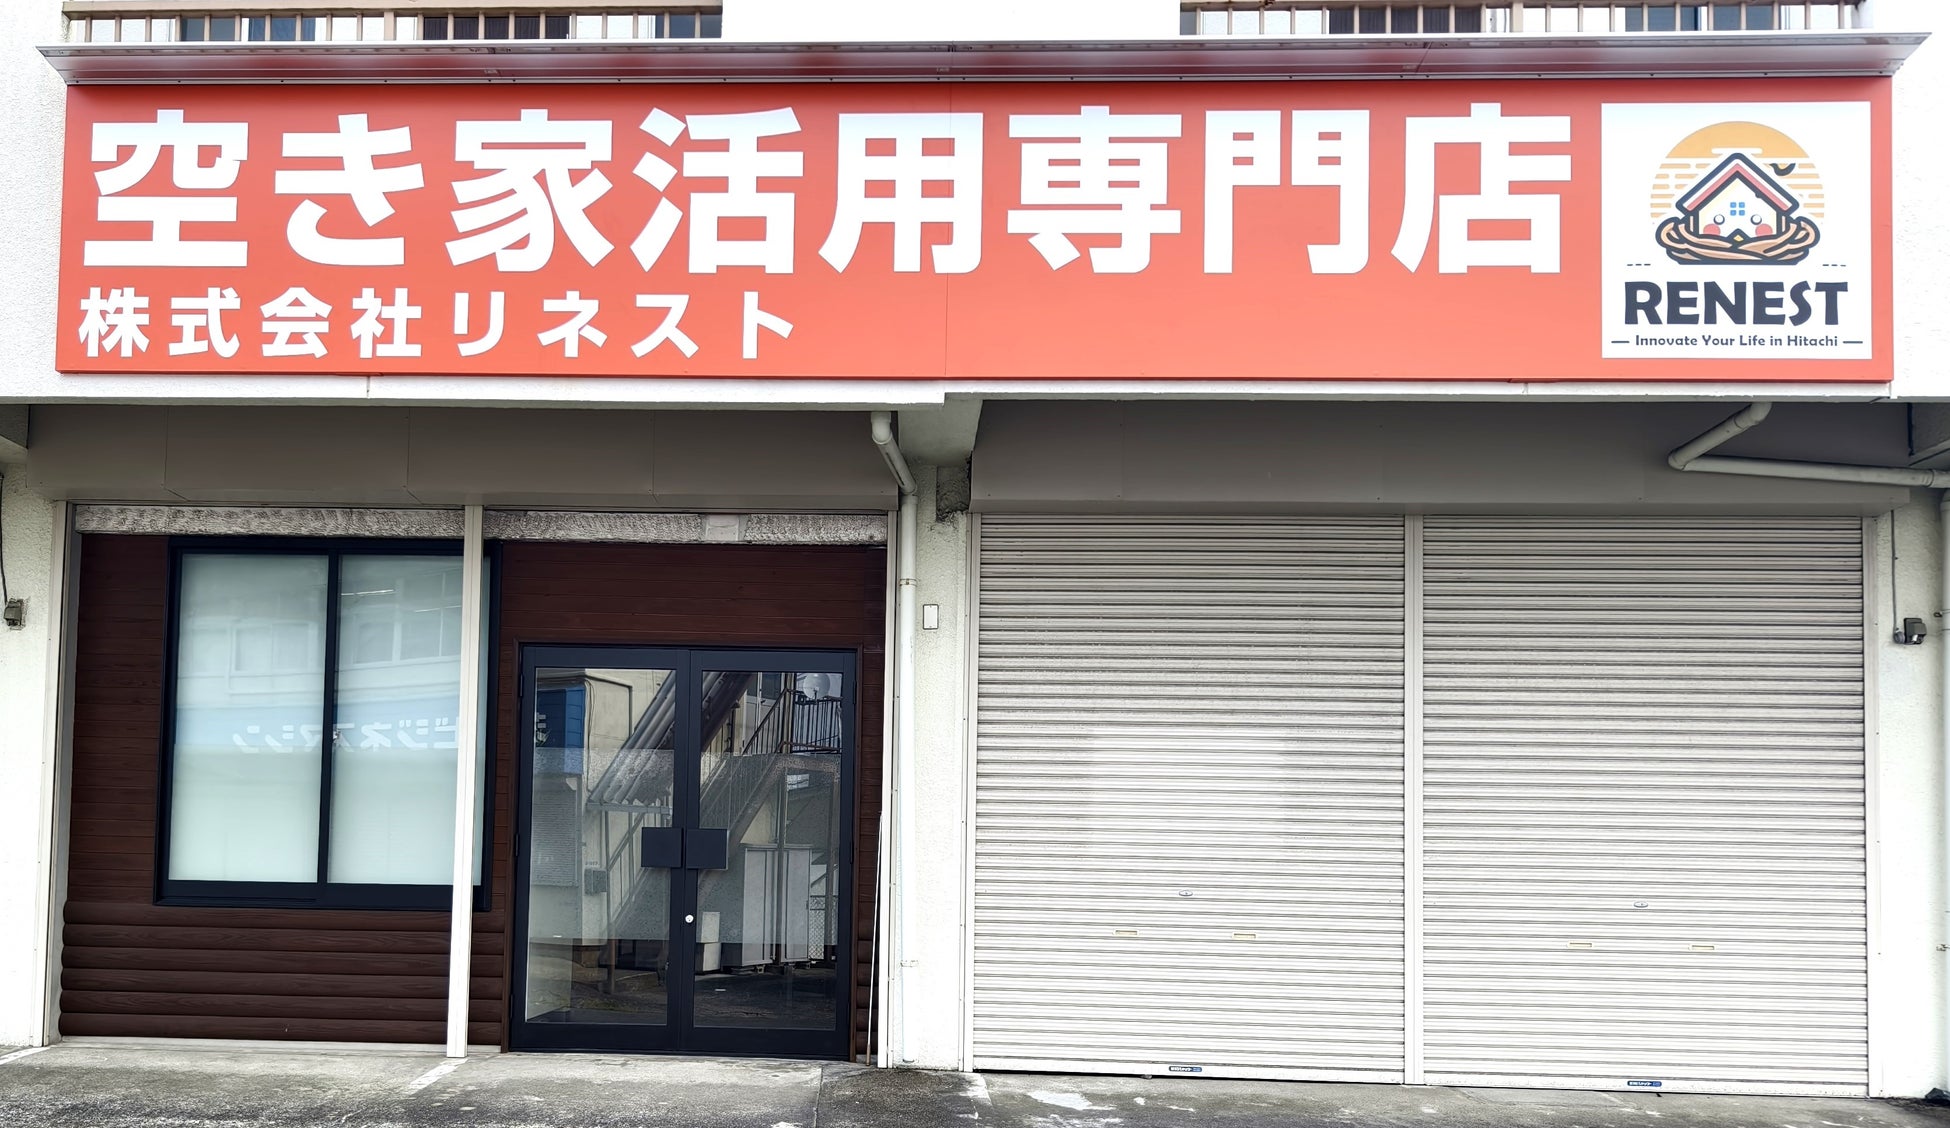 株式会社リネスト、茨城県日立市の空き家問題解決のための空き家活用ビジネスを開始